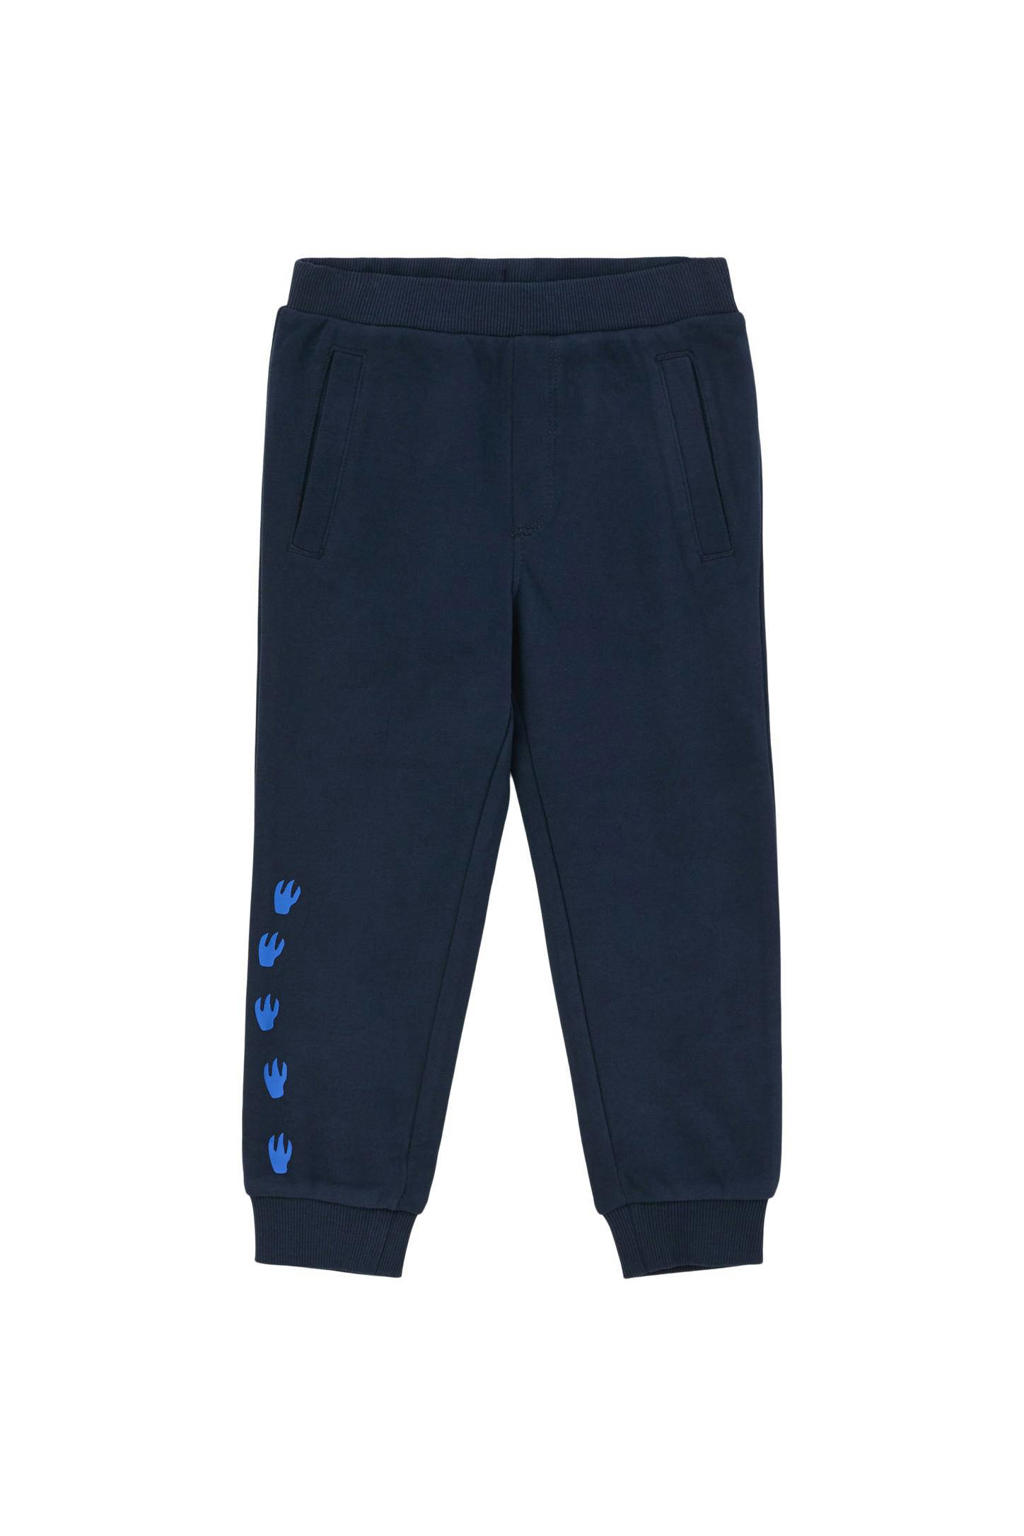 Donkerblauwe jongens s.Oliver joggingbroek van sweat materiaal met elastische tailleband en printopdruk